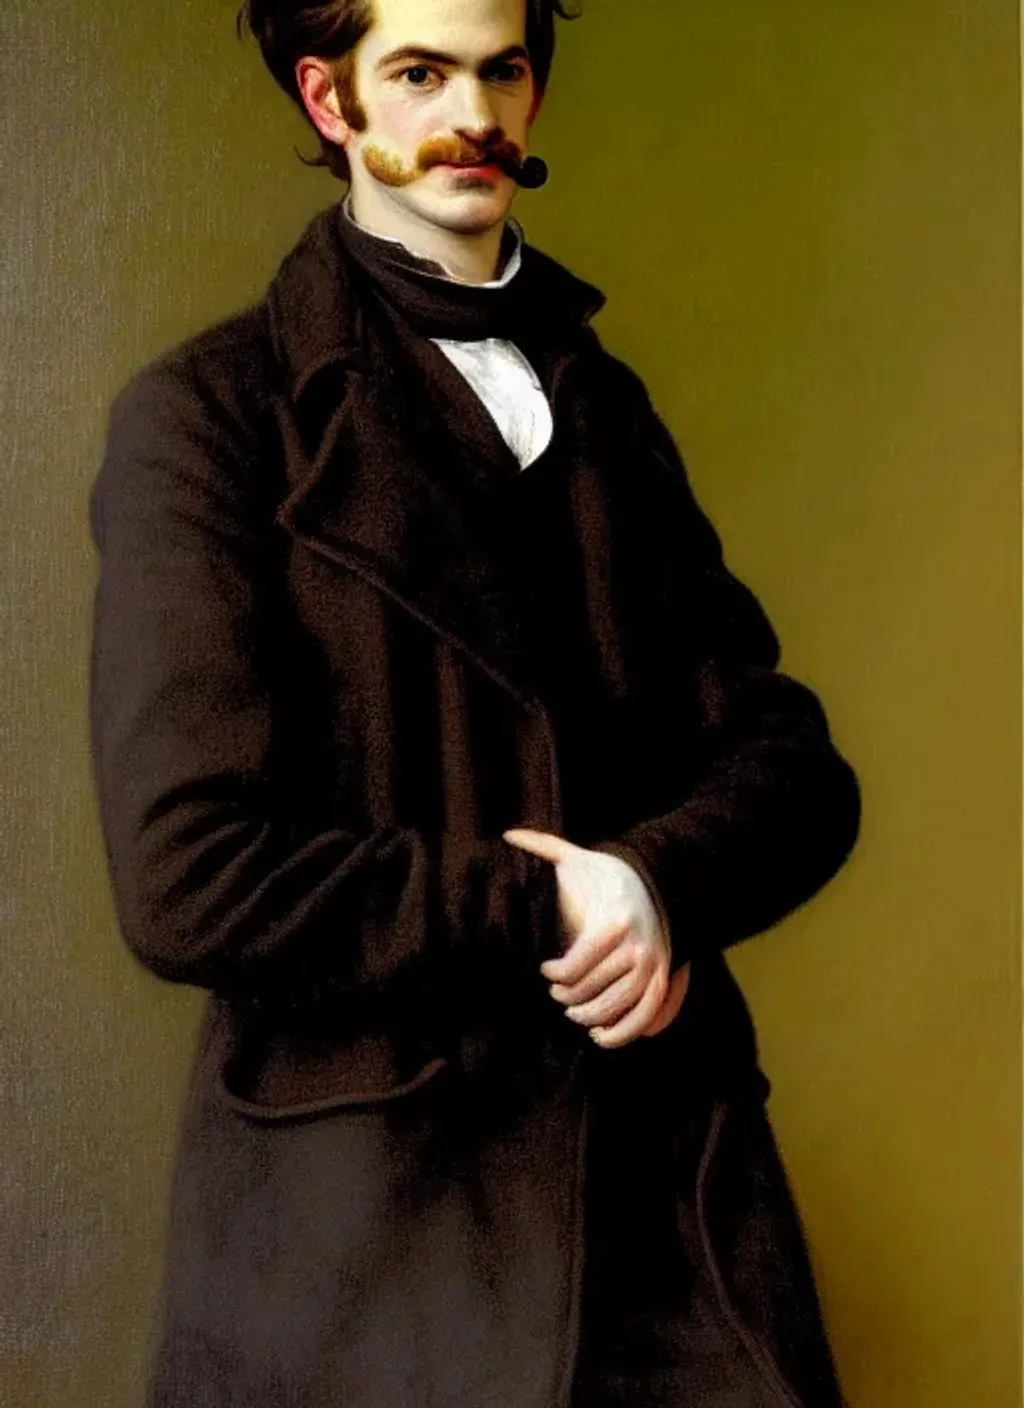 Prompt: Portrait of Andrew Garfield by Adolf Hirémy-Hirschl